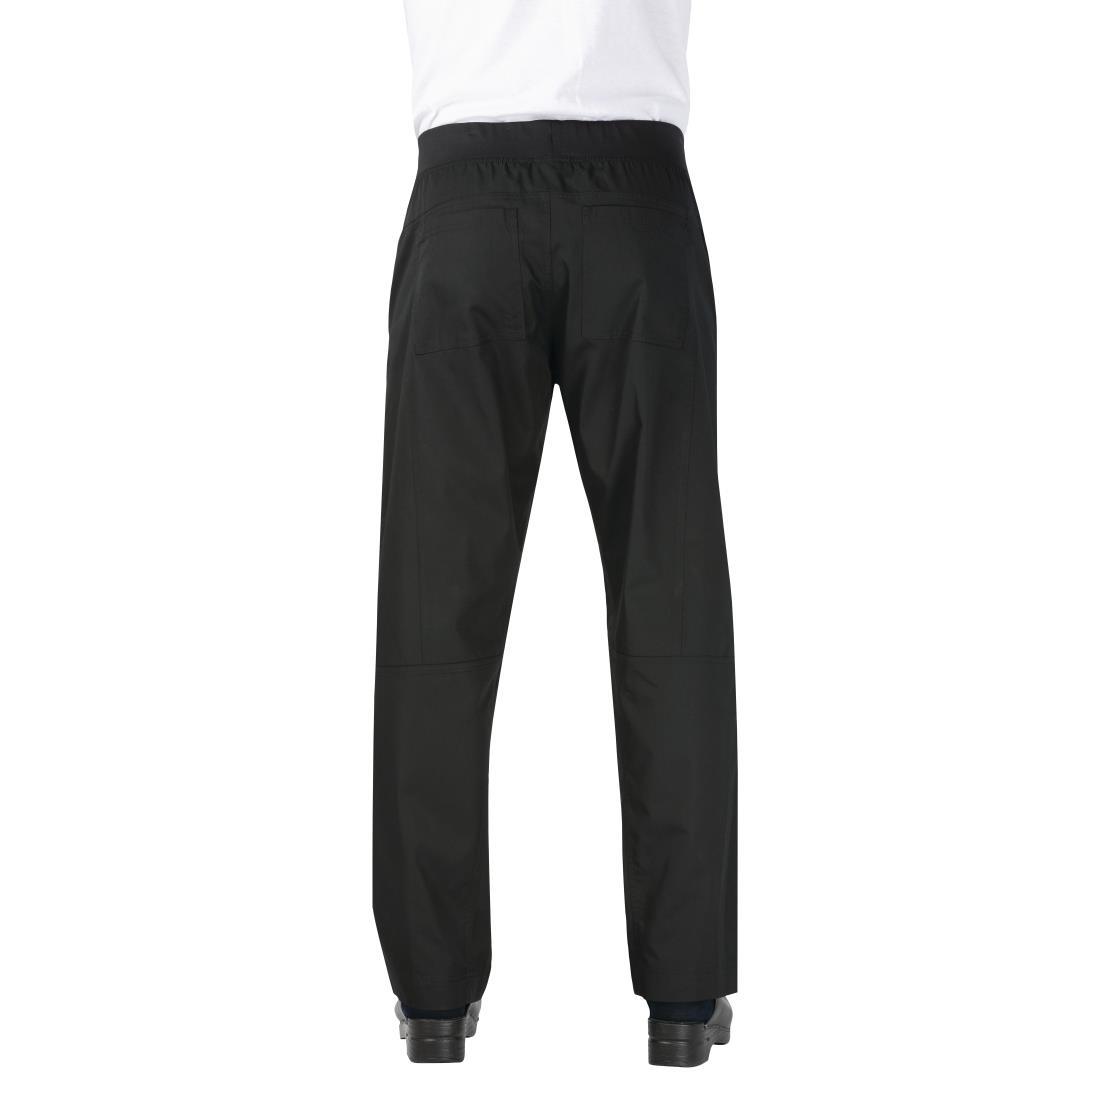 Chef Works Men's Lightweight Slim Trouser Black Size XL - BB301-XL  - 3